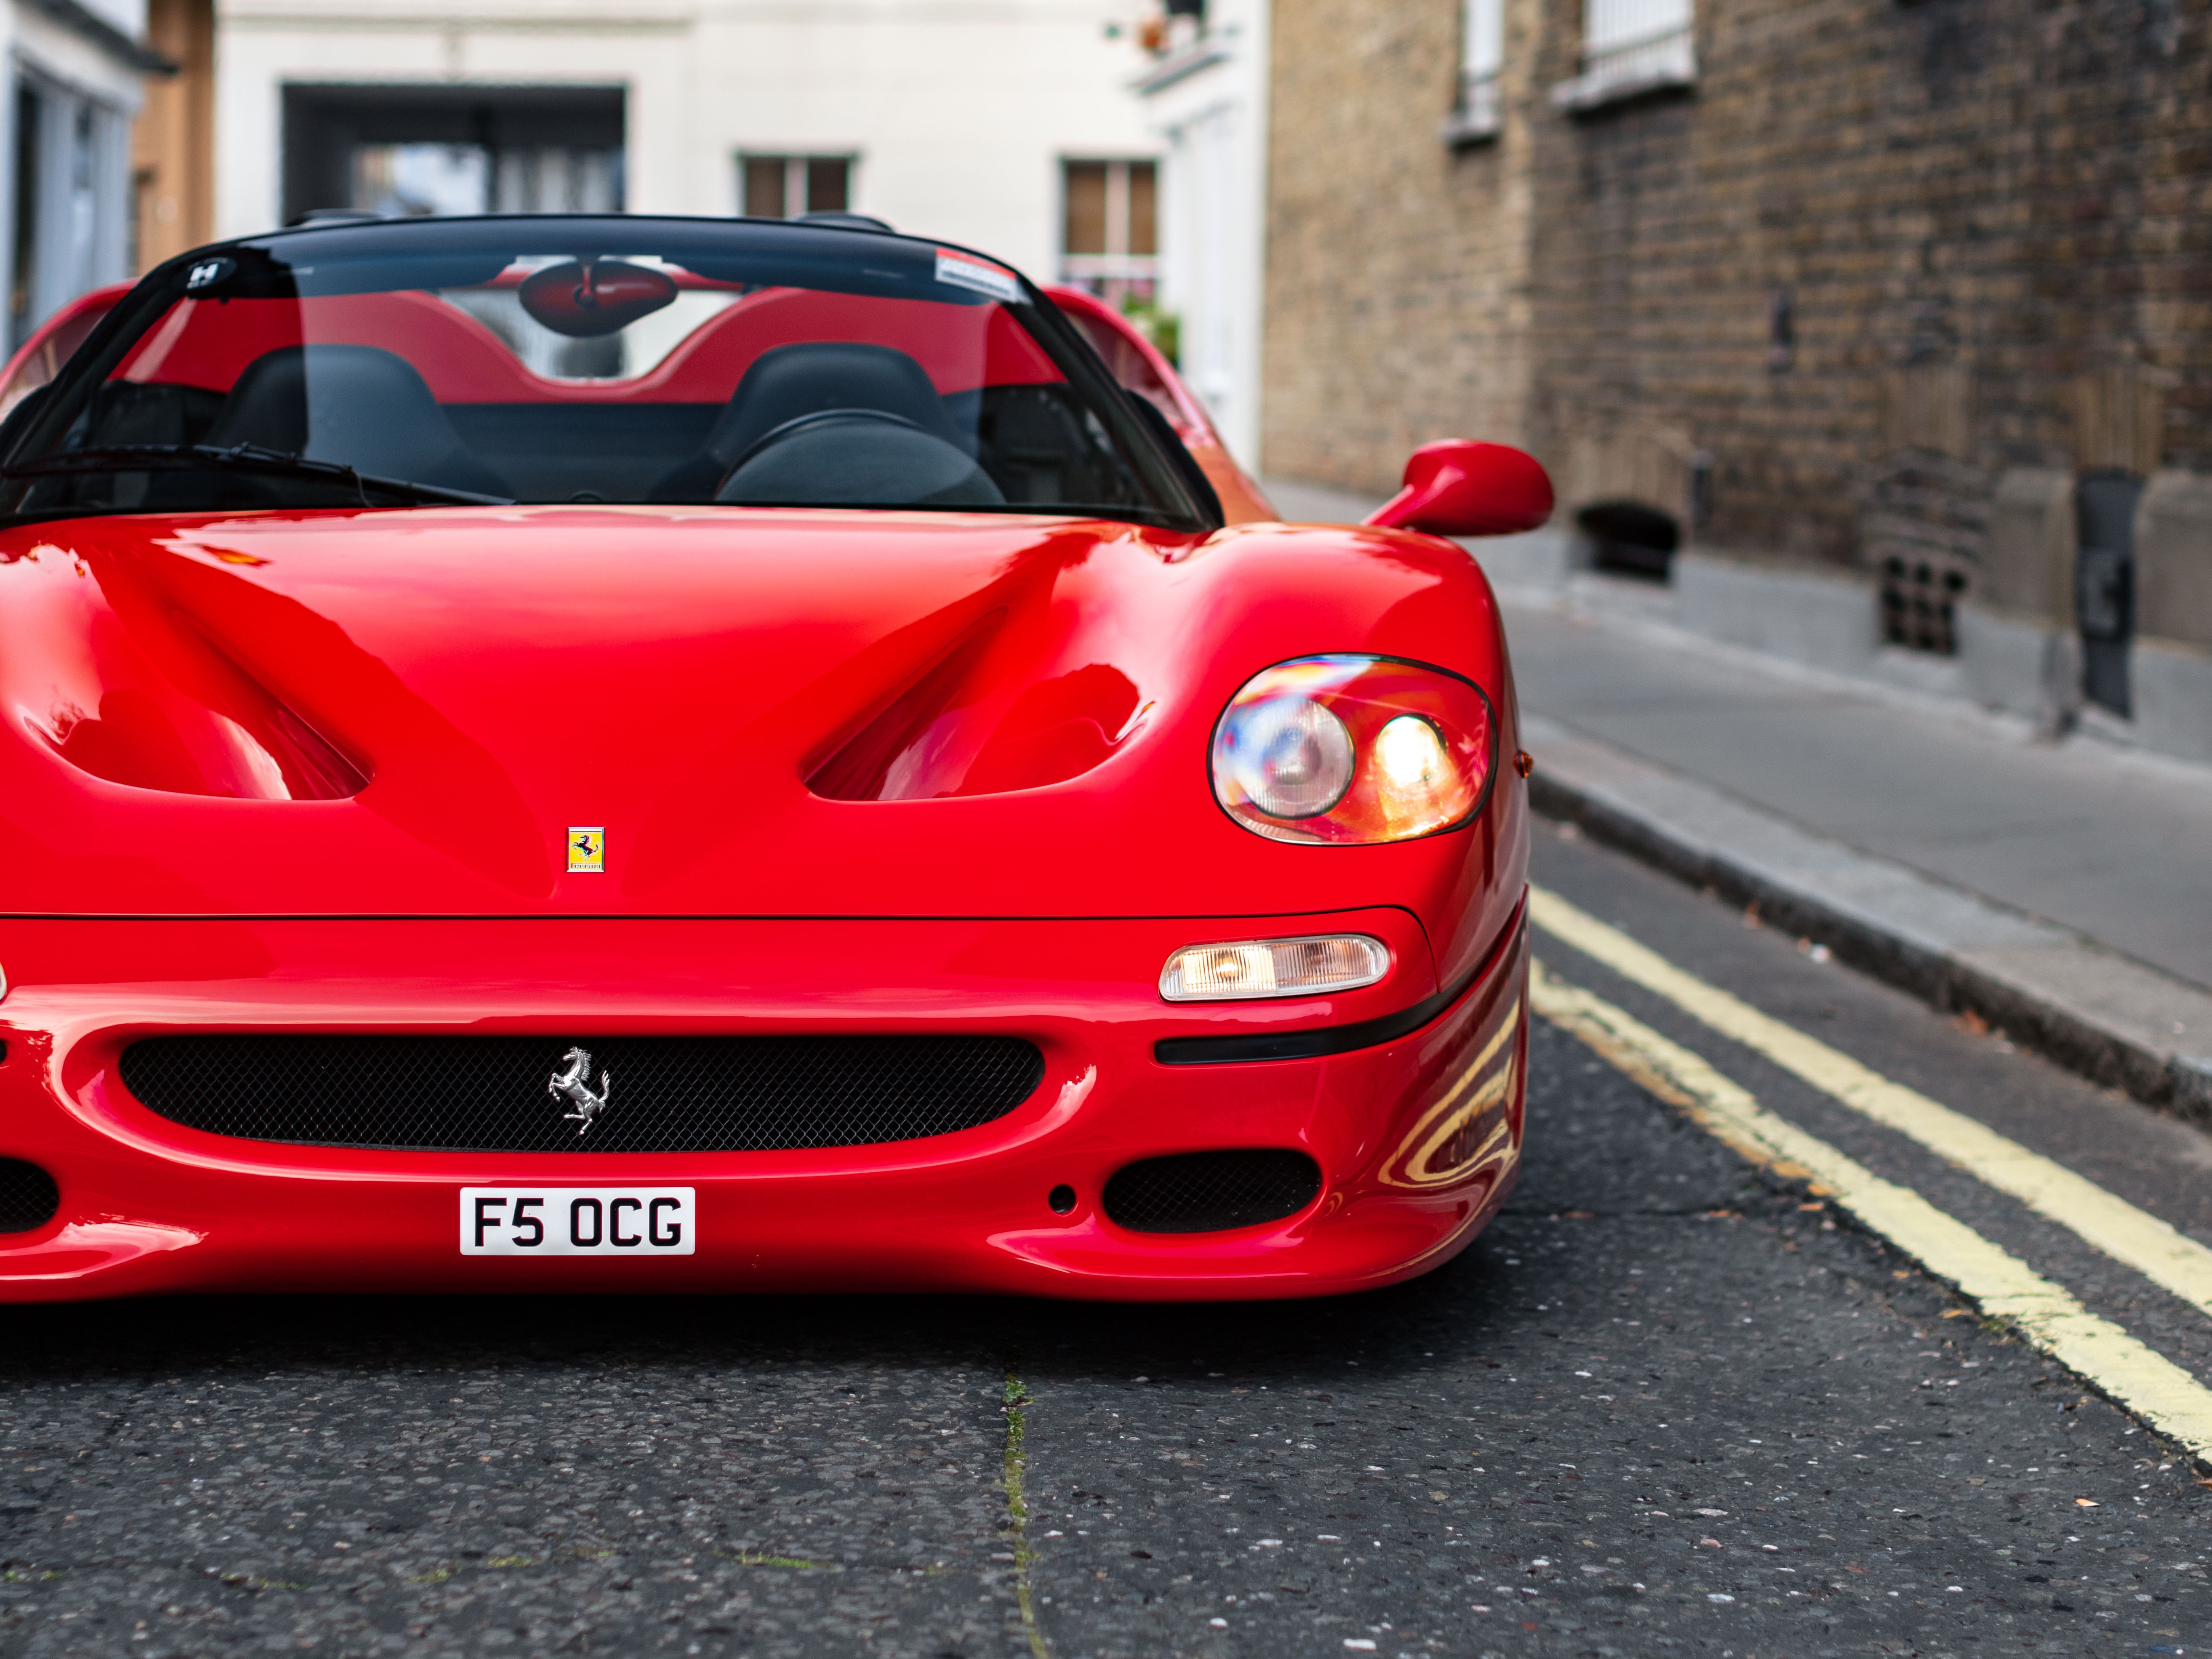 Wallpaper Ferrari, close-up, F50, front view, Ferrari F50 for 